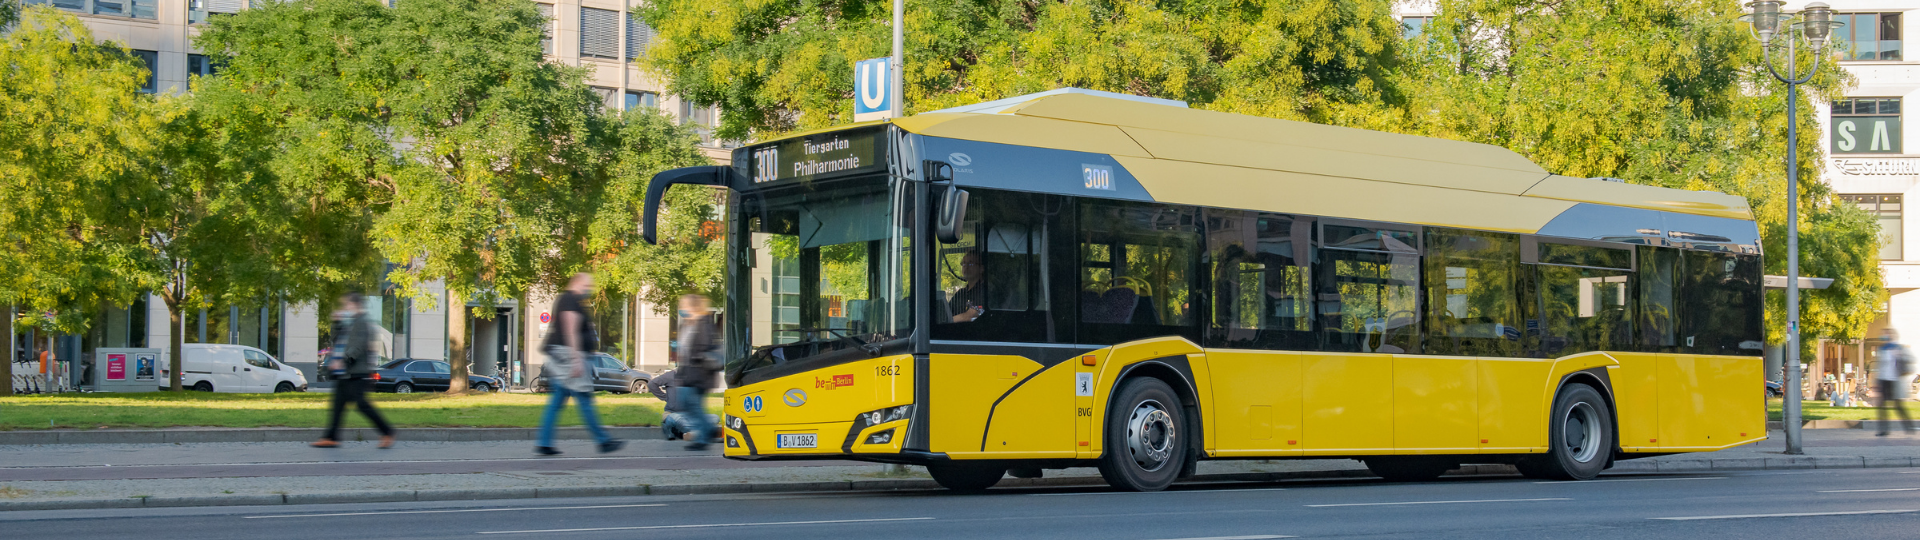 Metropole GZM unterzeichnet einen Vertrag über 32 E-Busse von Solaris